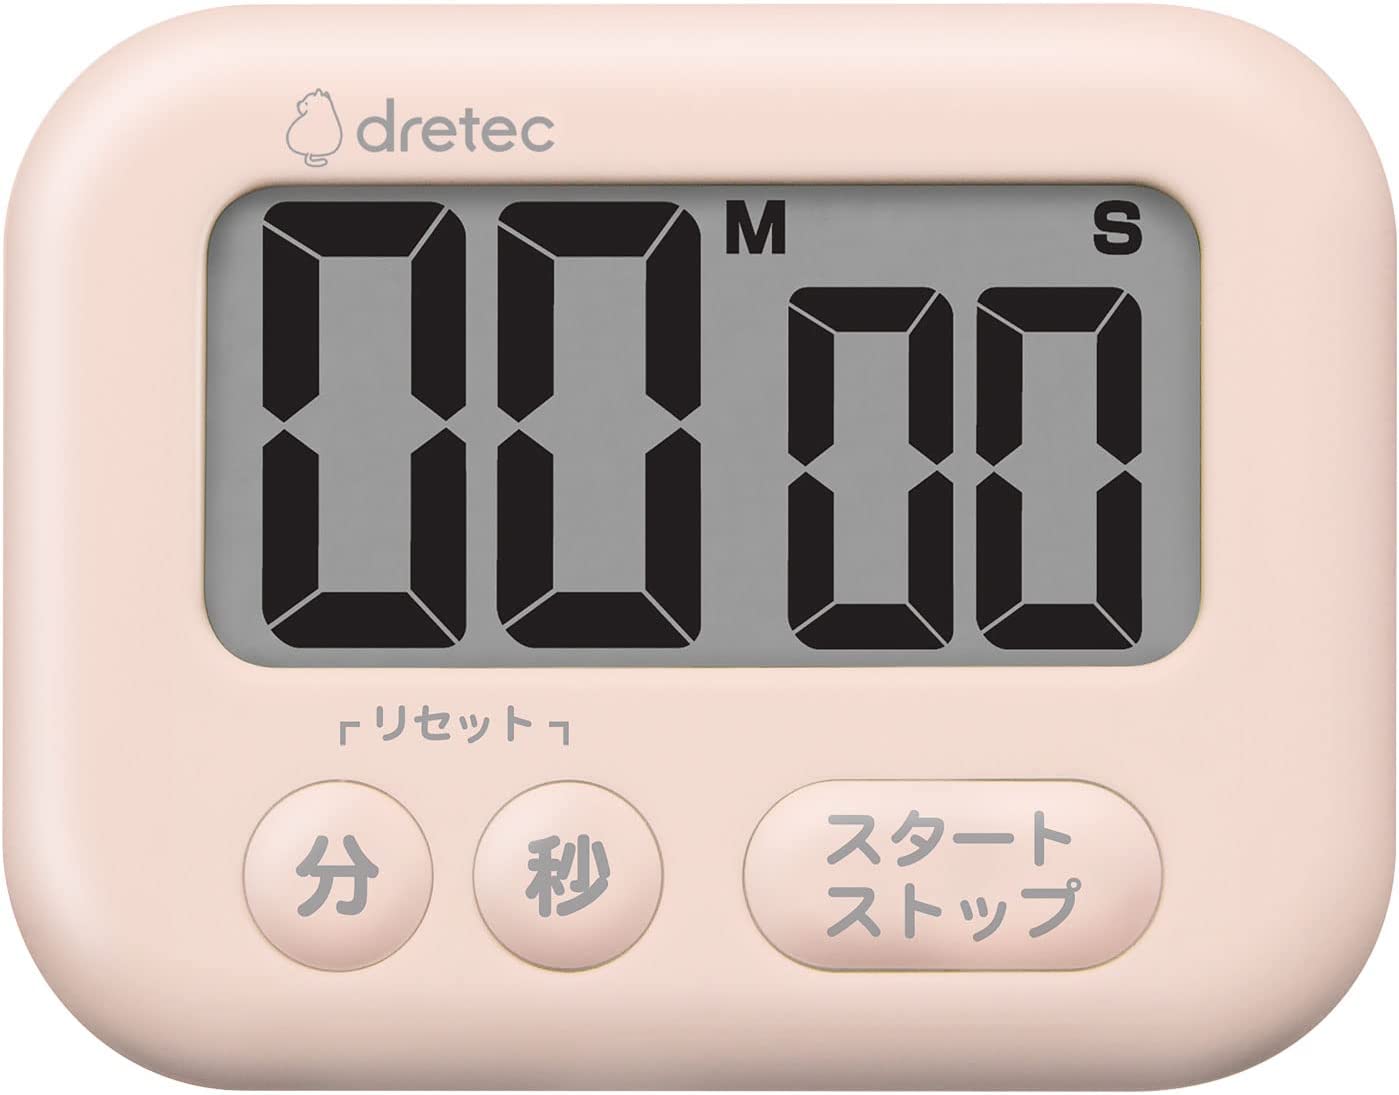 ドリテック タイマー 勉強 キッチン 大画面 マグネット デジタル シャボン ピンク T-614(PK)